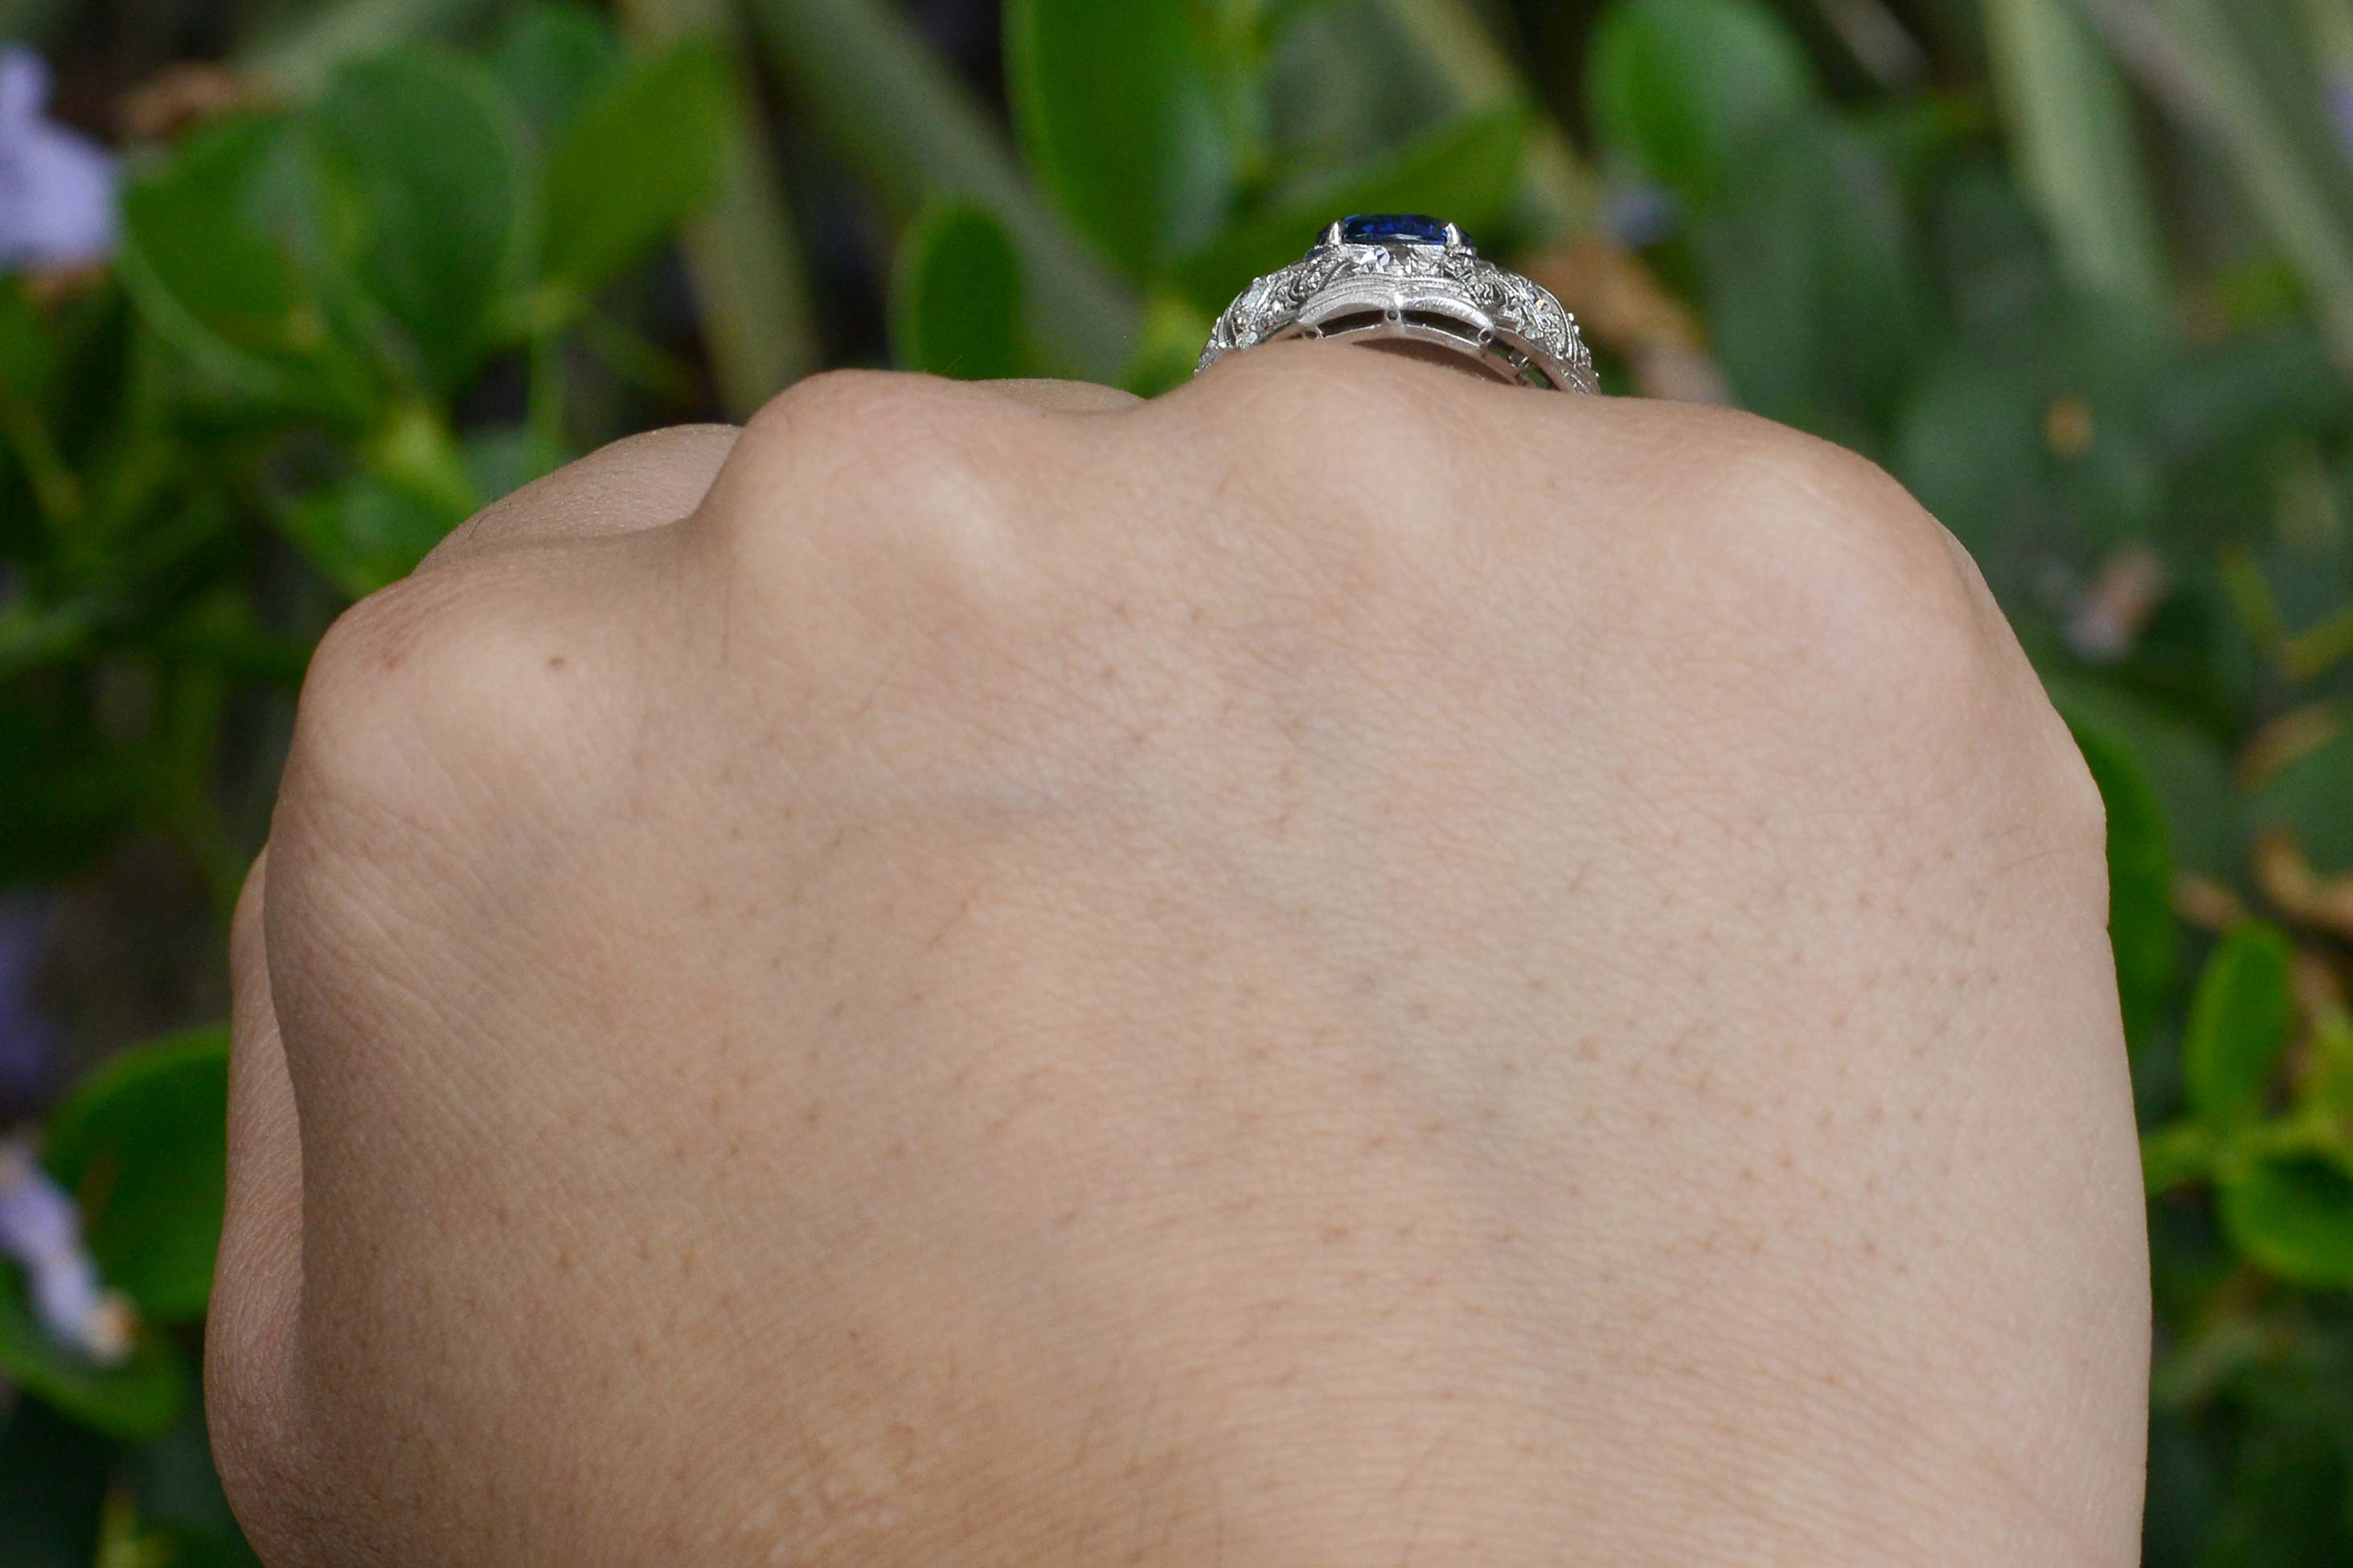 Antique Belle Epoque Filigree Sapphire Ring